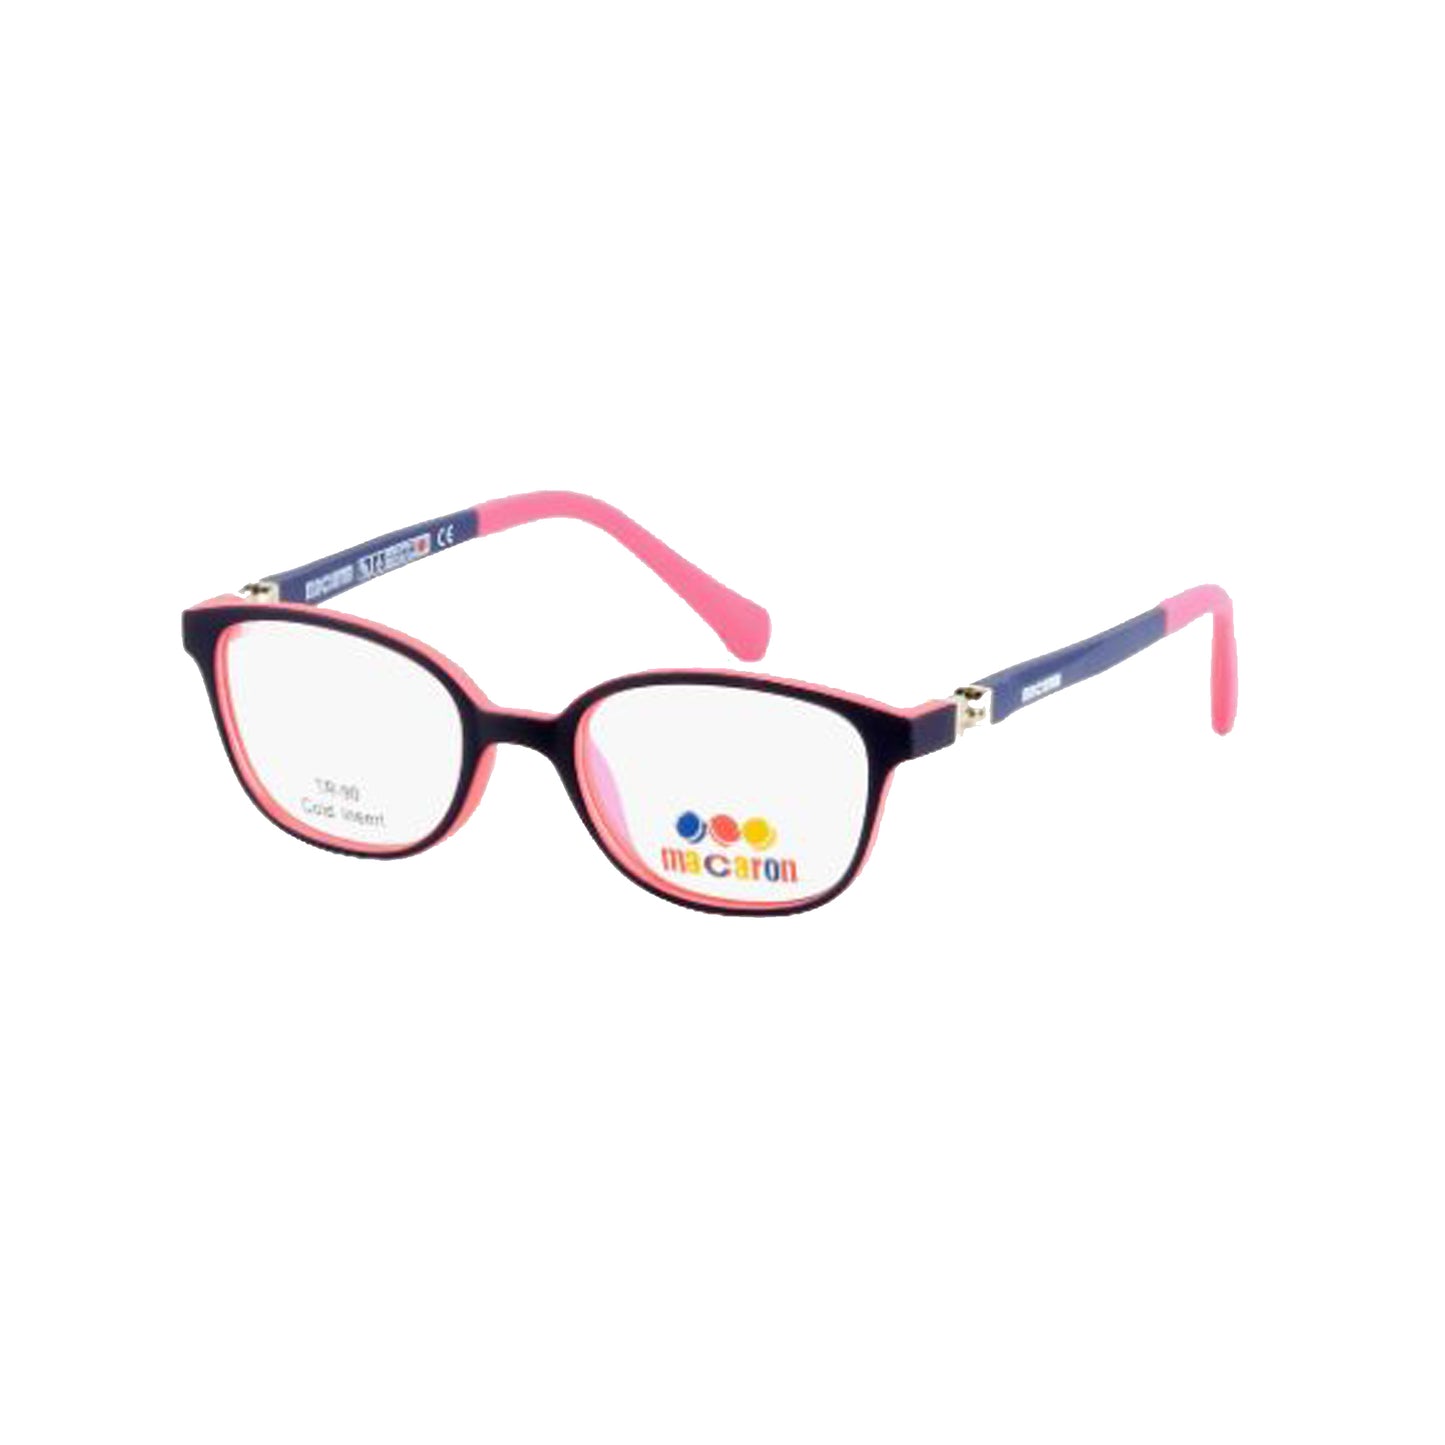 Macaron Pink Round Acetate Full Rim Eyeglasses for Kids